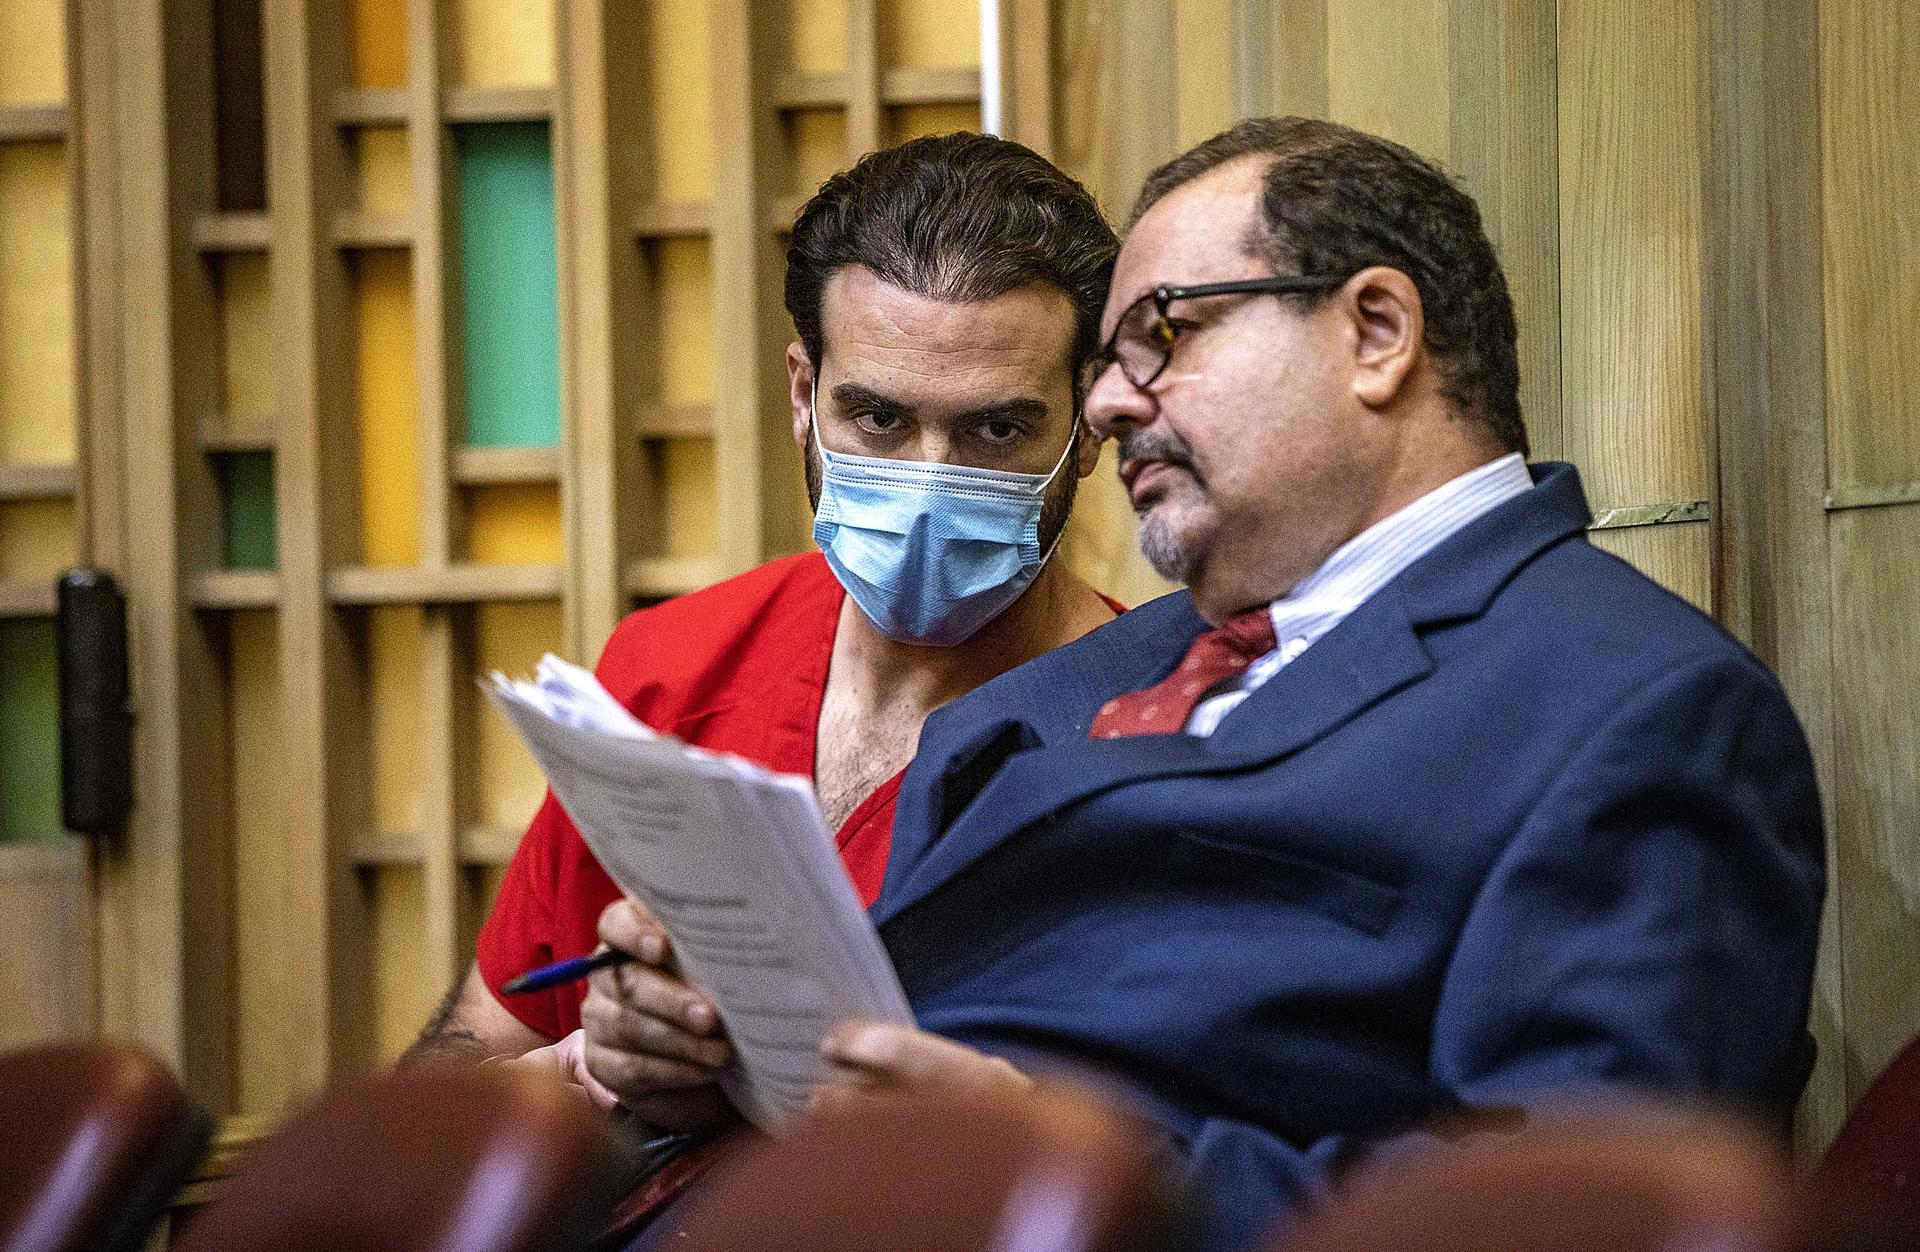 El actor mexicano Pablo Lyle escucha a su abogado Phil Reizenstein (d), durante una audiencia, en una fotografía de archivo. EFE/Pedro Portal Miami Herald/Pool